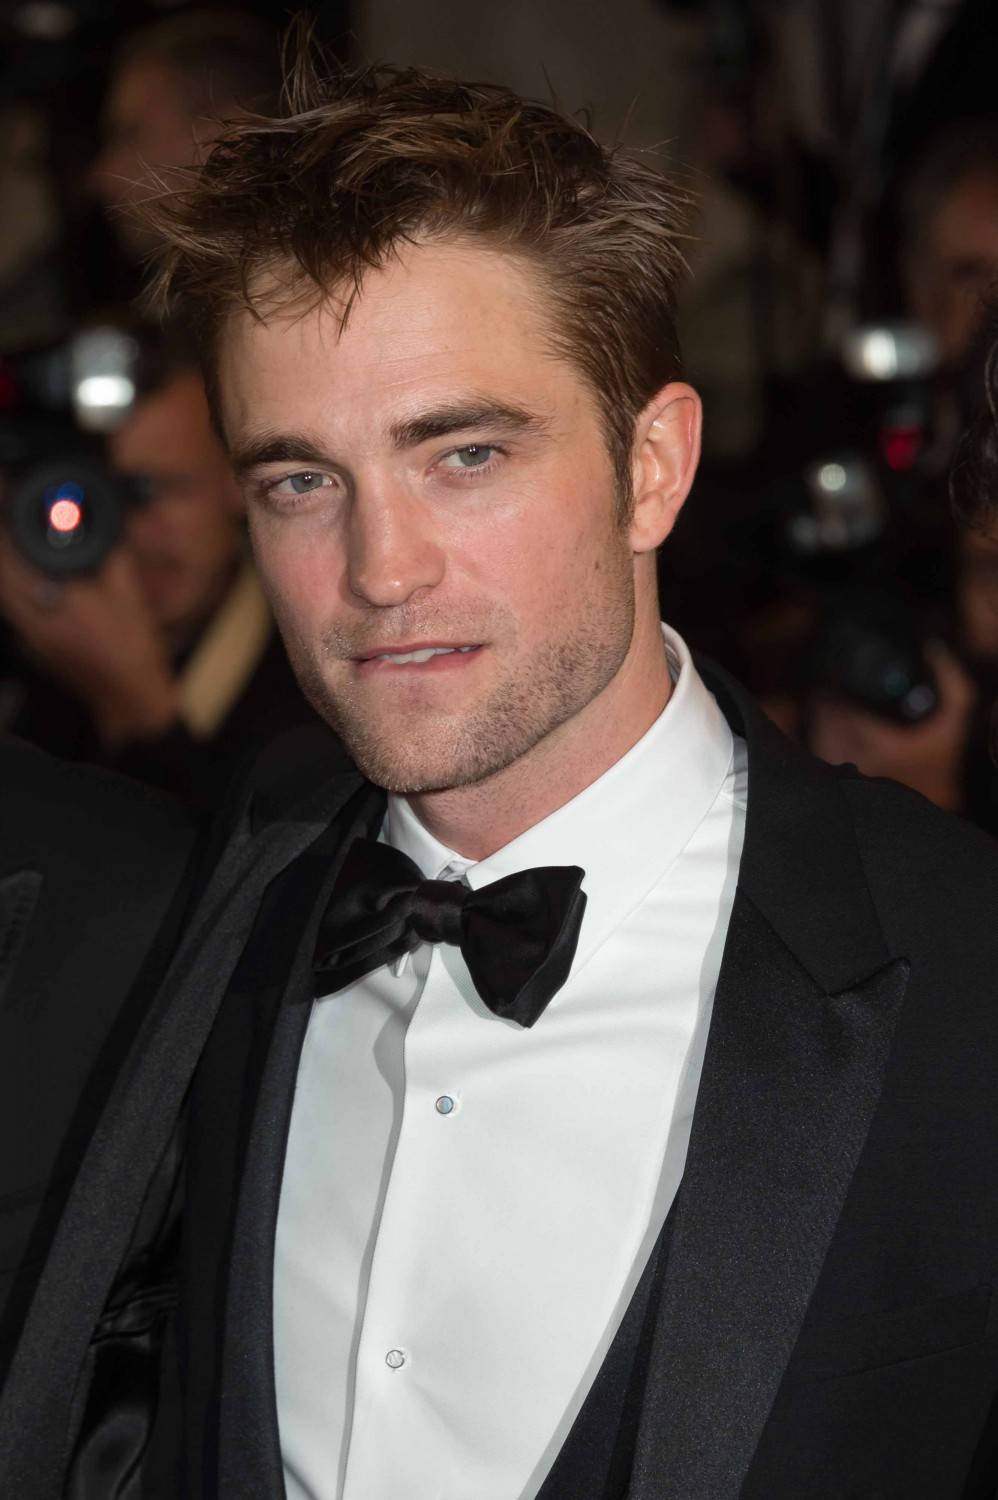 La faccia sporca e cattiva del bel vampiro Pattinson